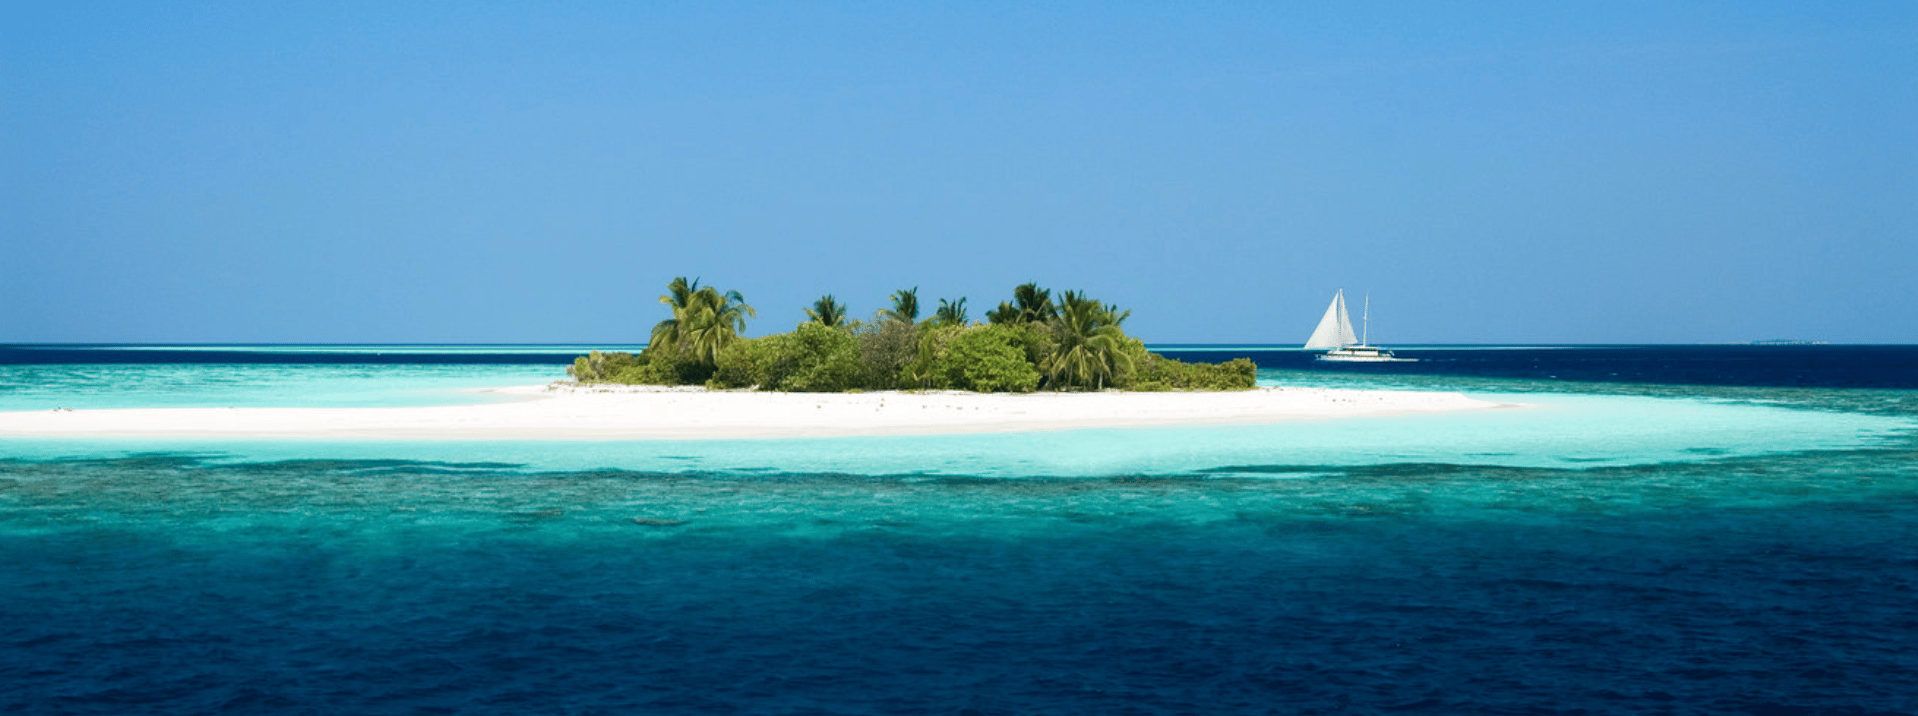 Maldives Yacht Charter